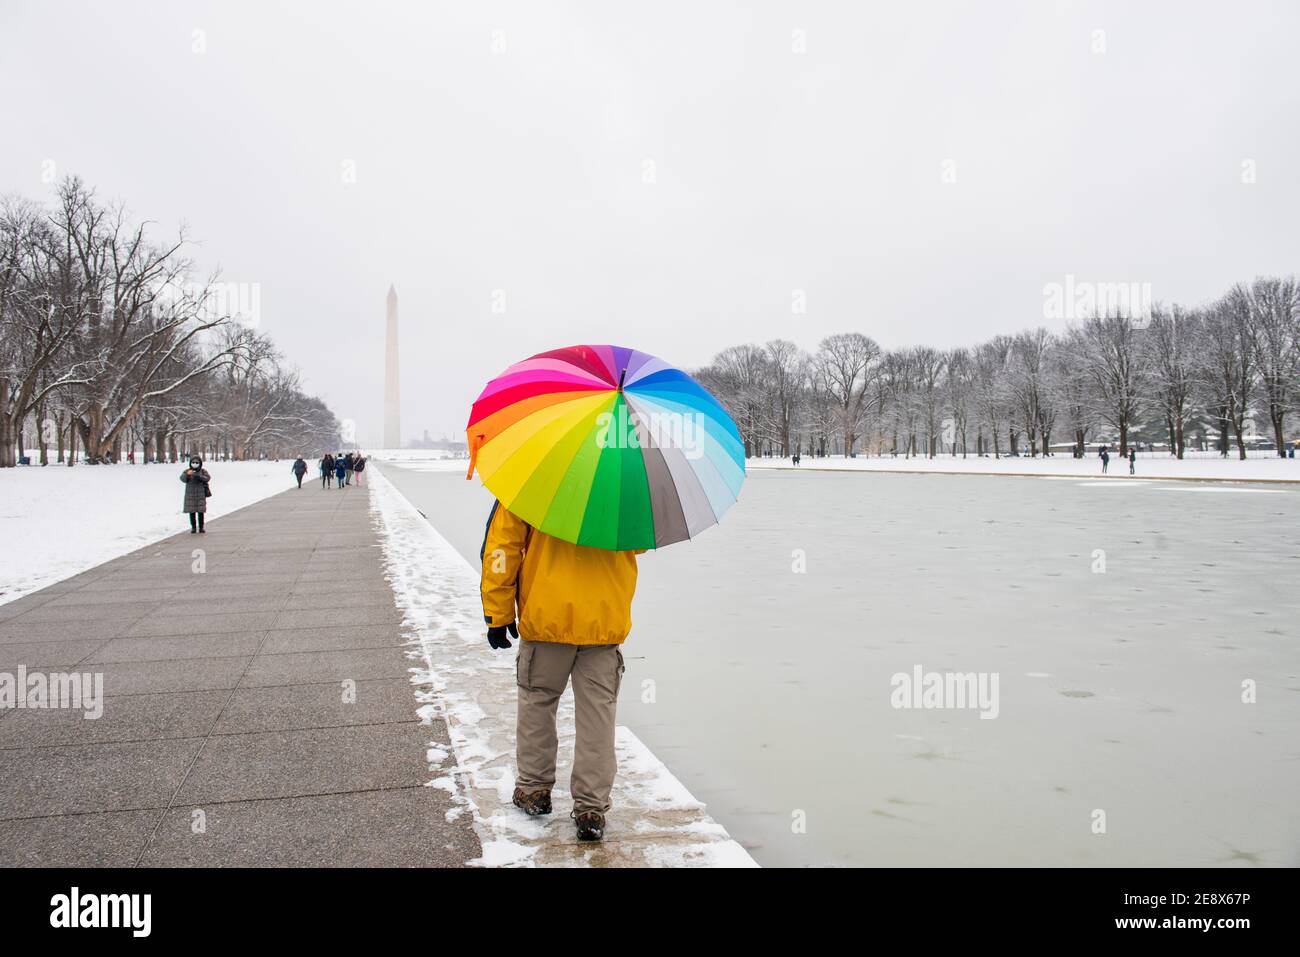 Ein Mann trägt einen bunten Regenschirm während eines verschneiten Tages auf der National Mall in Washington, D.C. das Washignton Monument kann in der Ferne gesehen werden Stockfoto